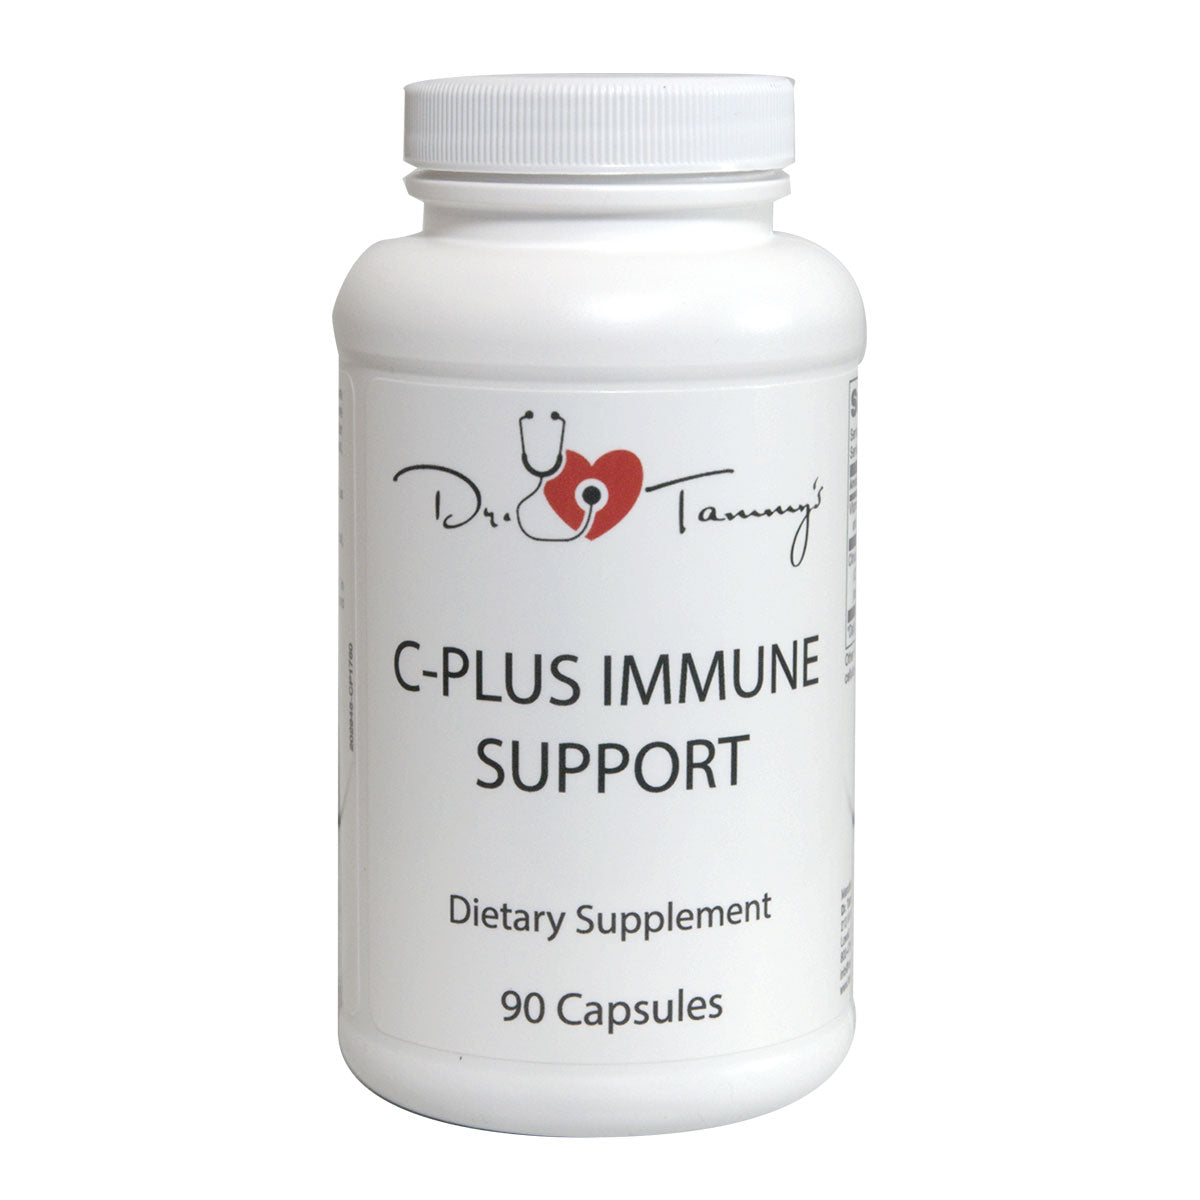 C Plus Immune Support